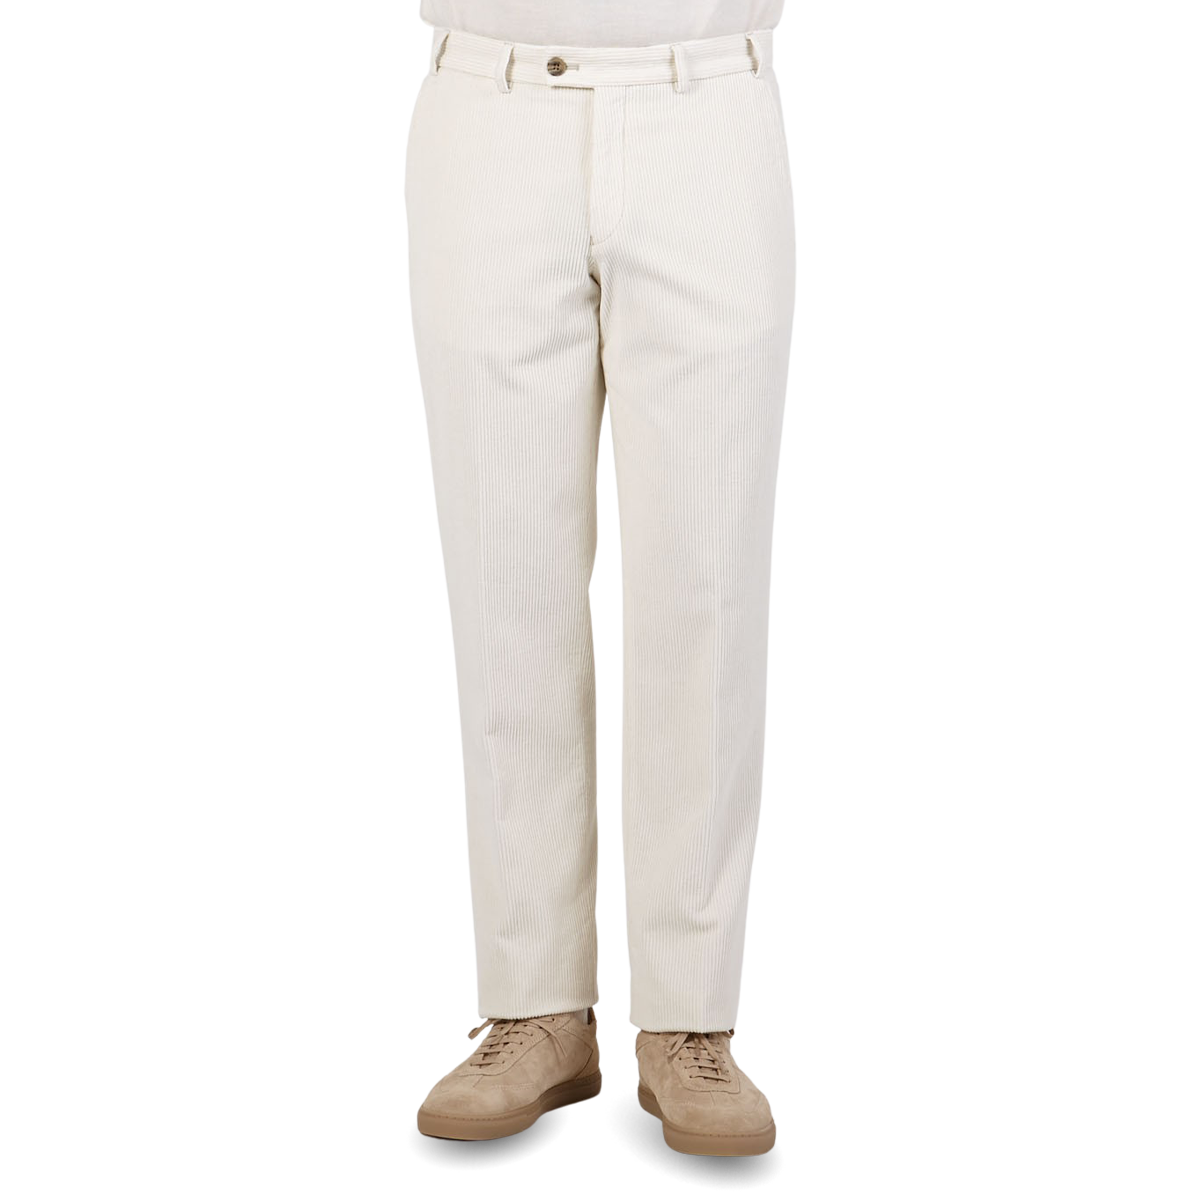 John Galt White Corduroy Pants Size S | eBay